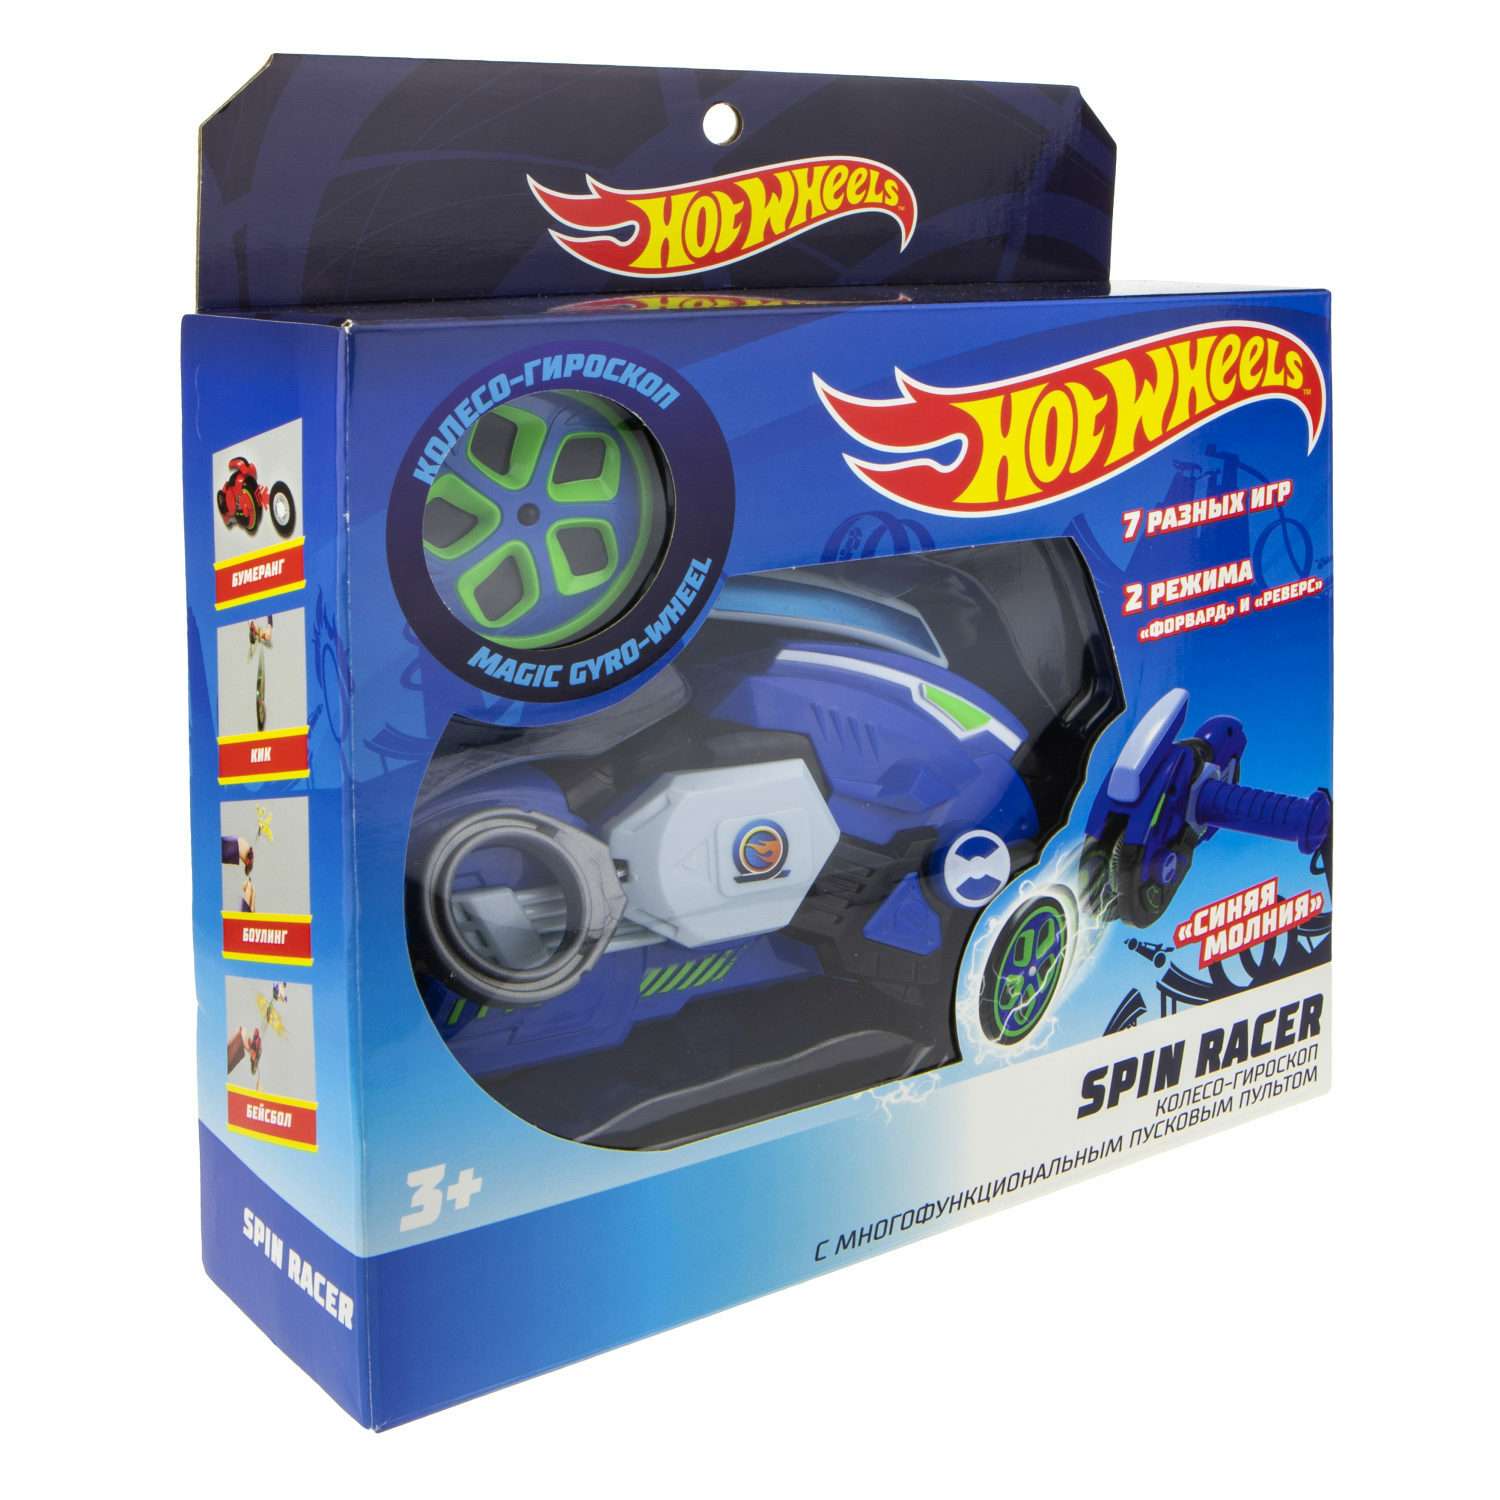 Игровой набор Hot Wheels Spin Racer Синяя Молния игрушечный мотоцикл с колесом-гироскопом Т19373 - фото 7